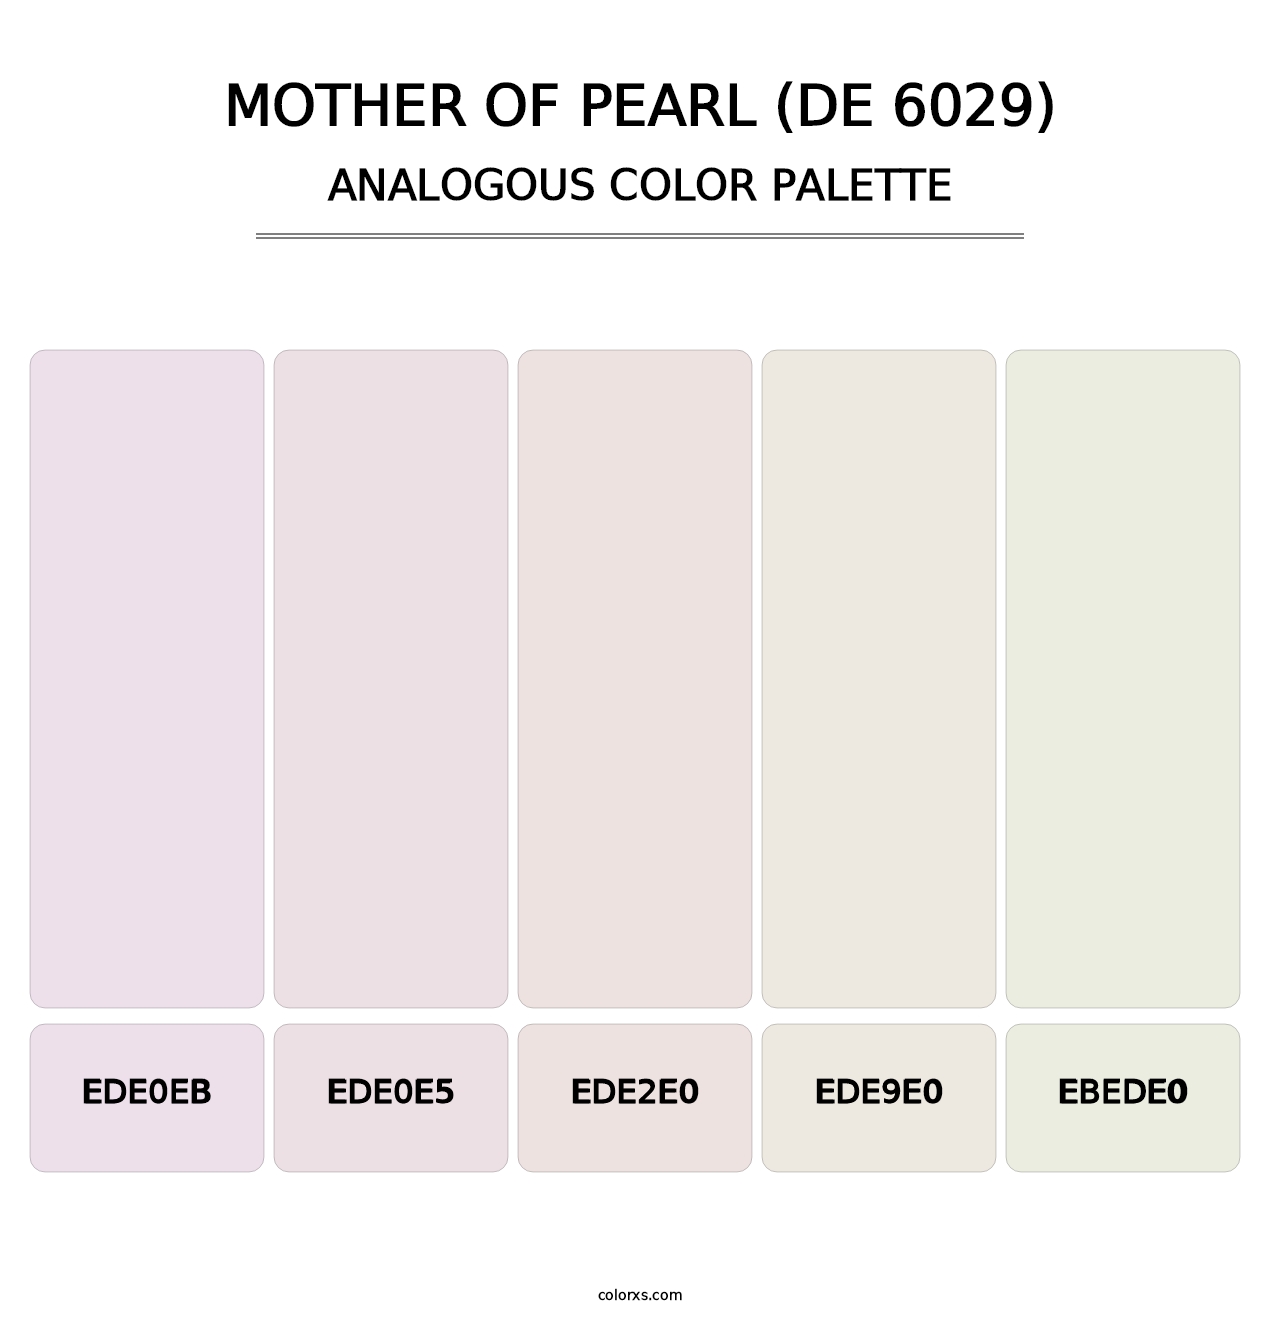 Mother of Pearl (DE 6029) - Analogous Color Palette